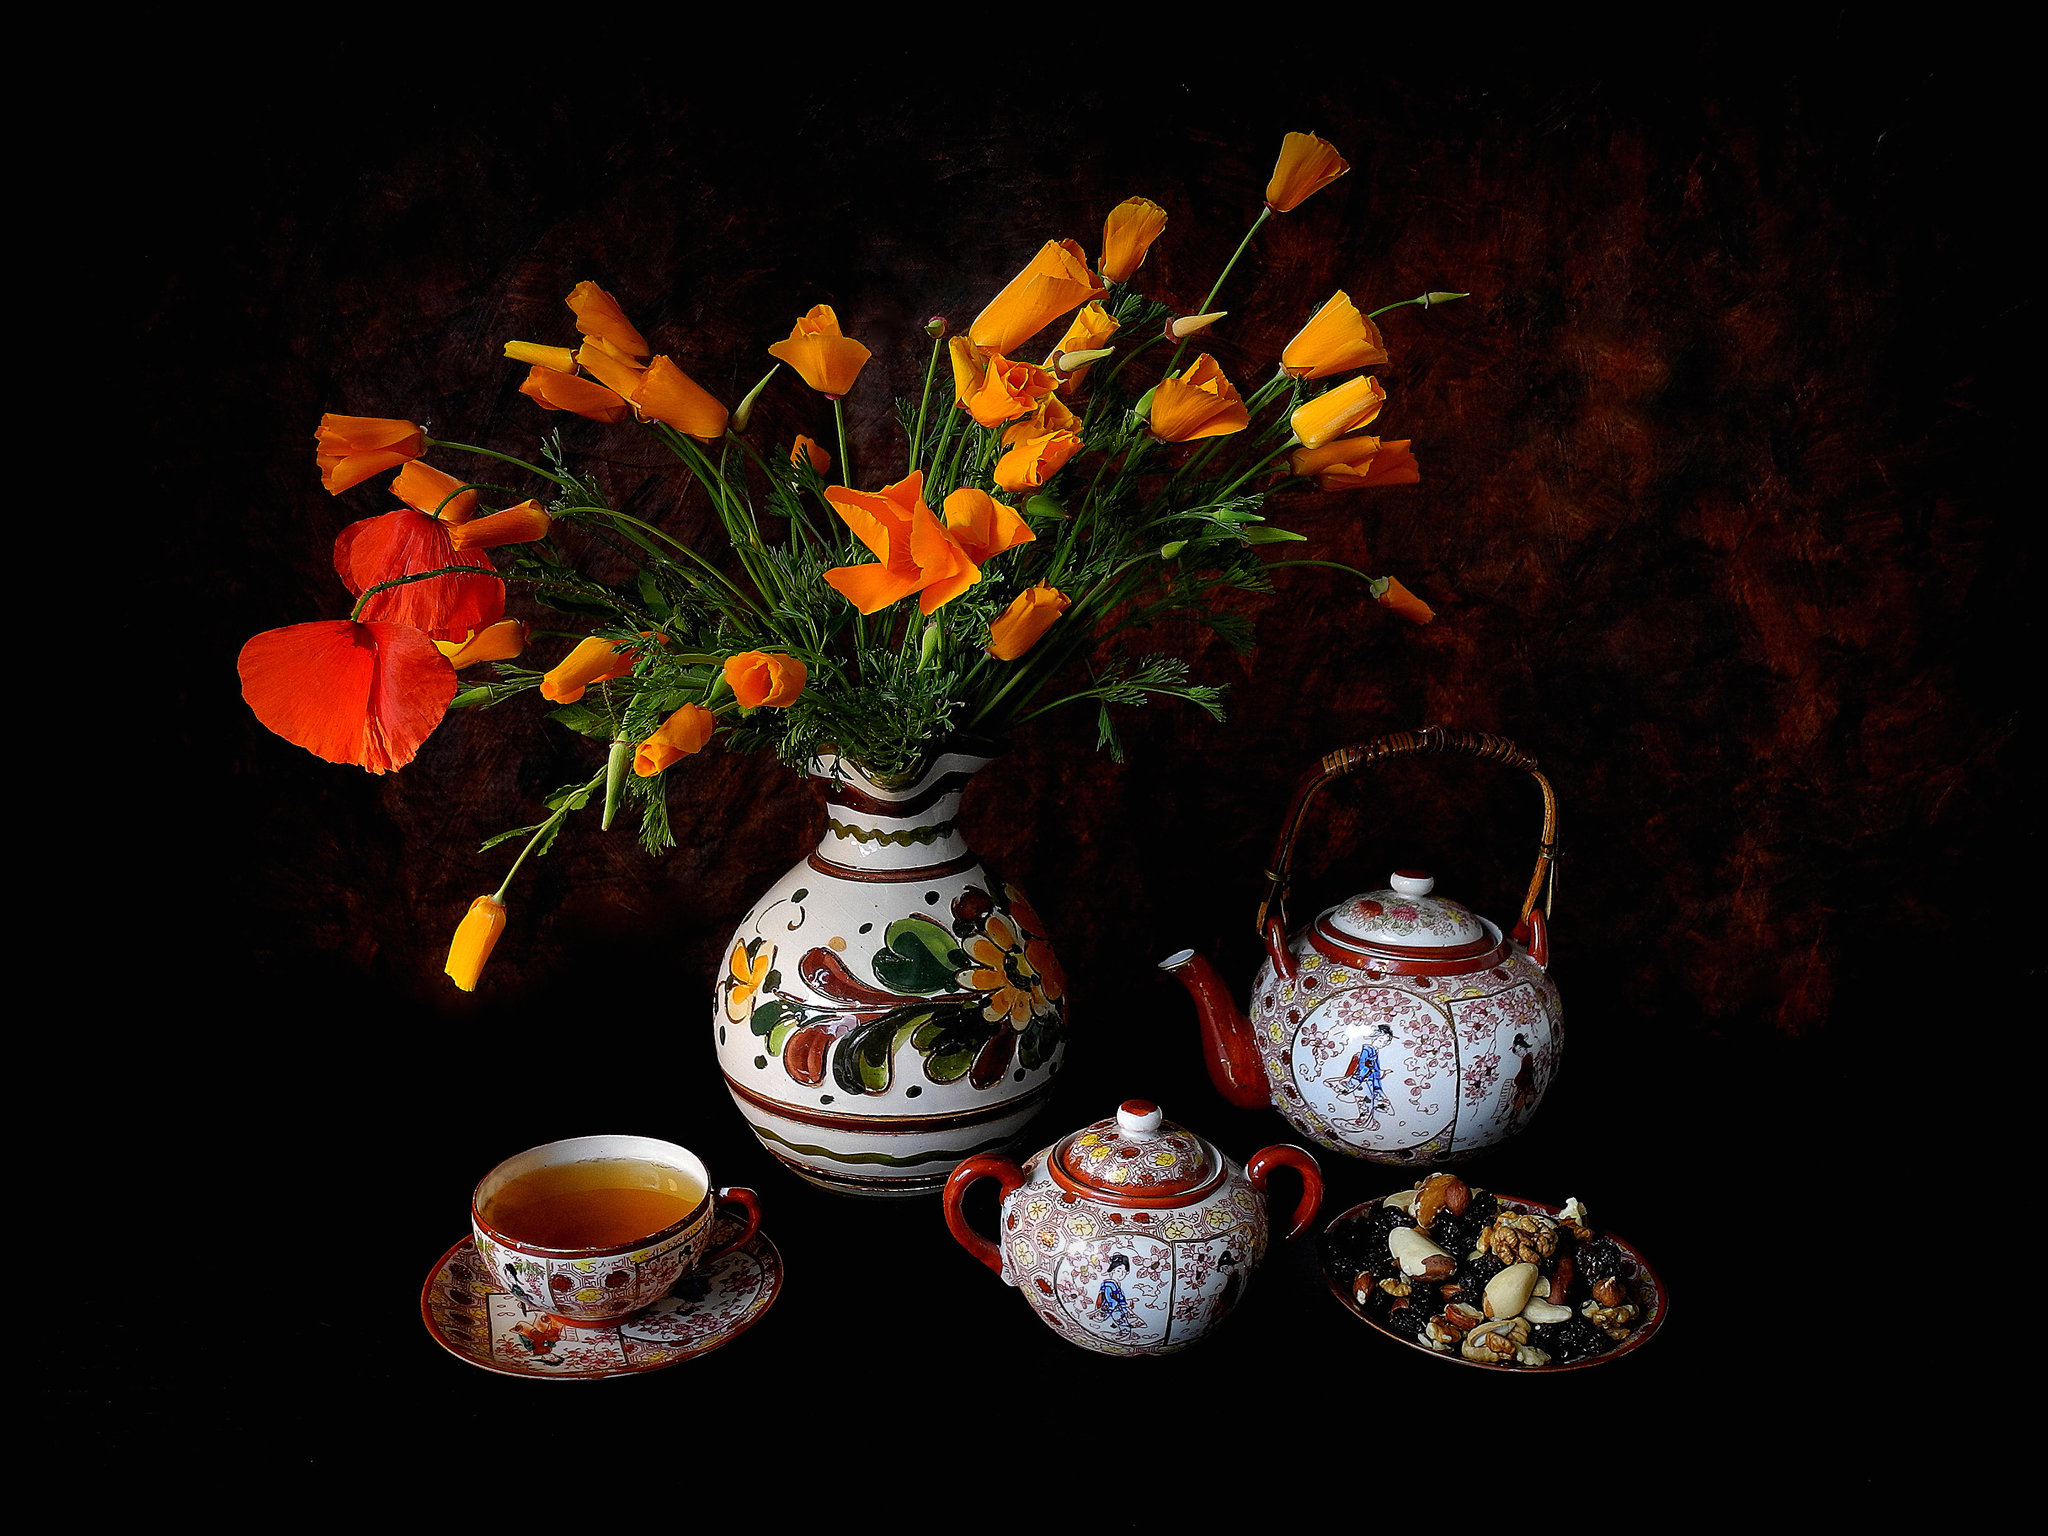 Скачать картинку Натюрморт, Цветок, Чай, Чайник, Фотографии, Орех, Оранжевый Цветок в телефон бесплатно.